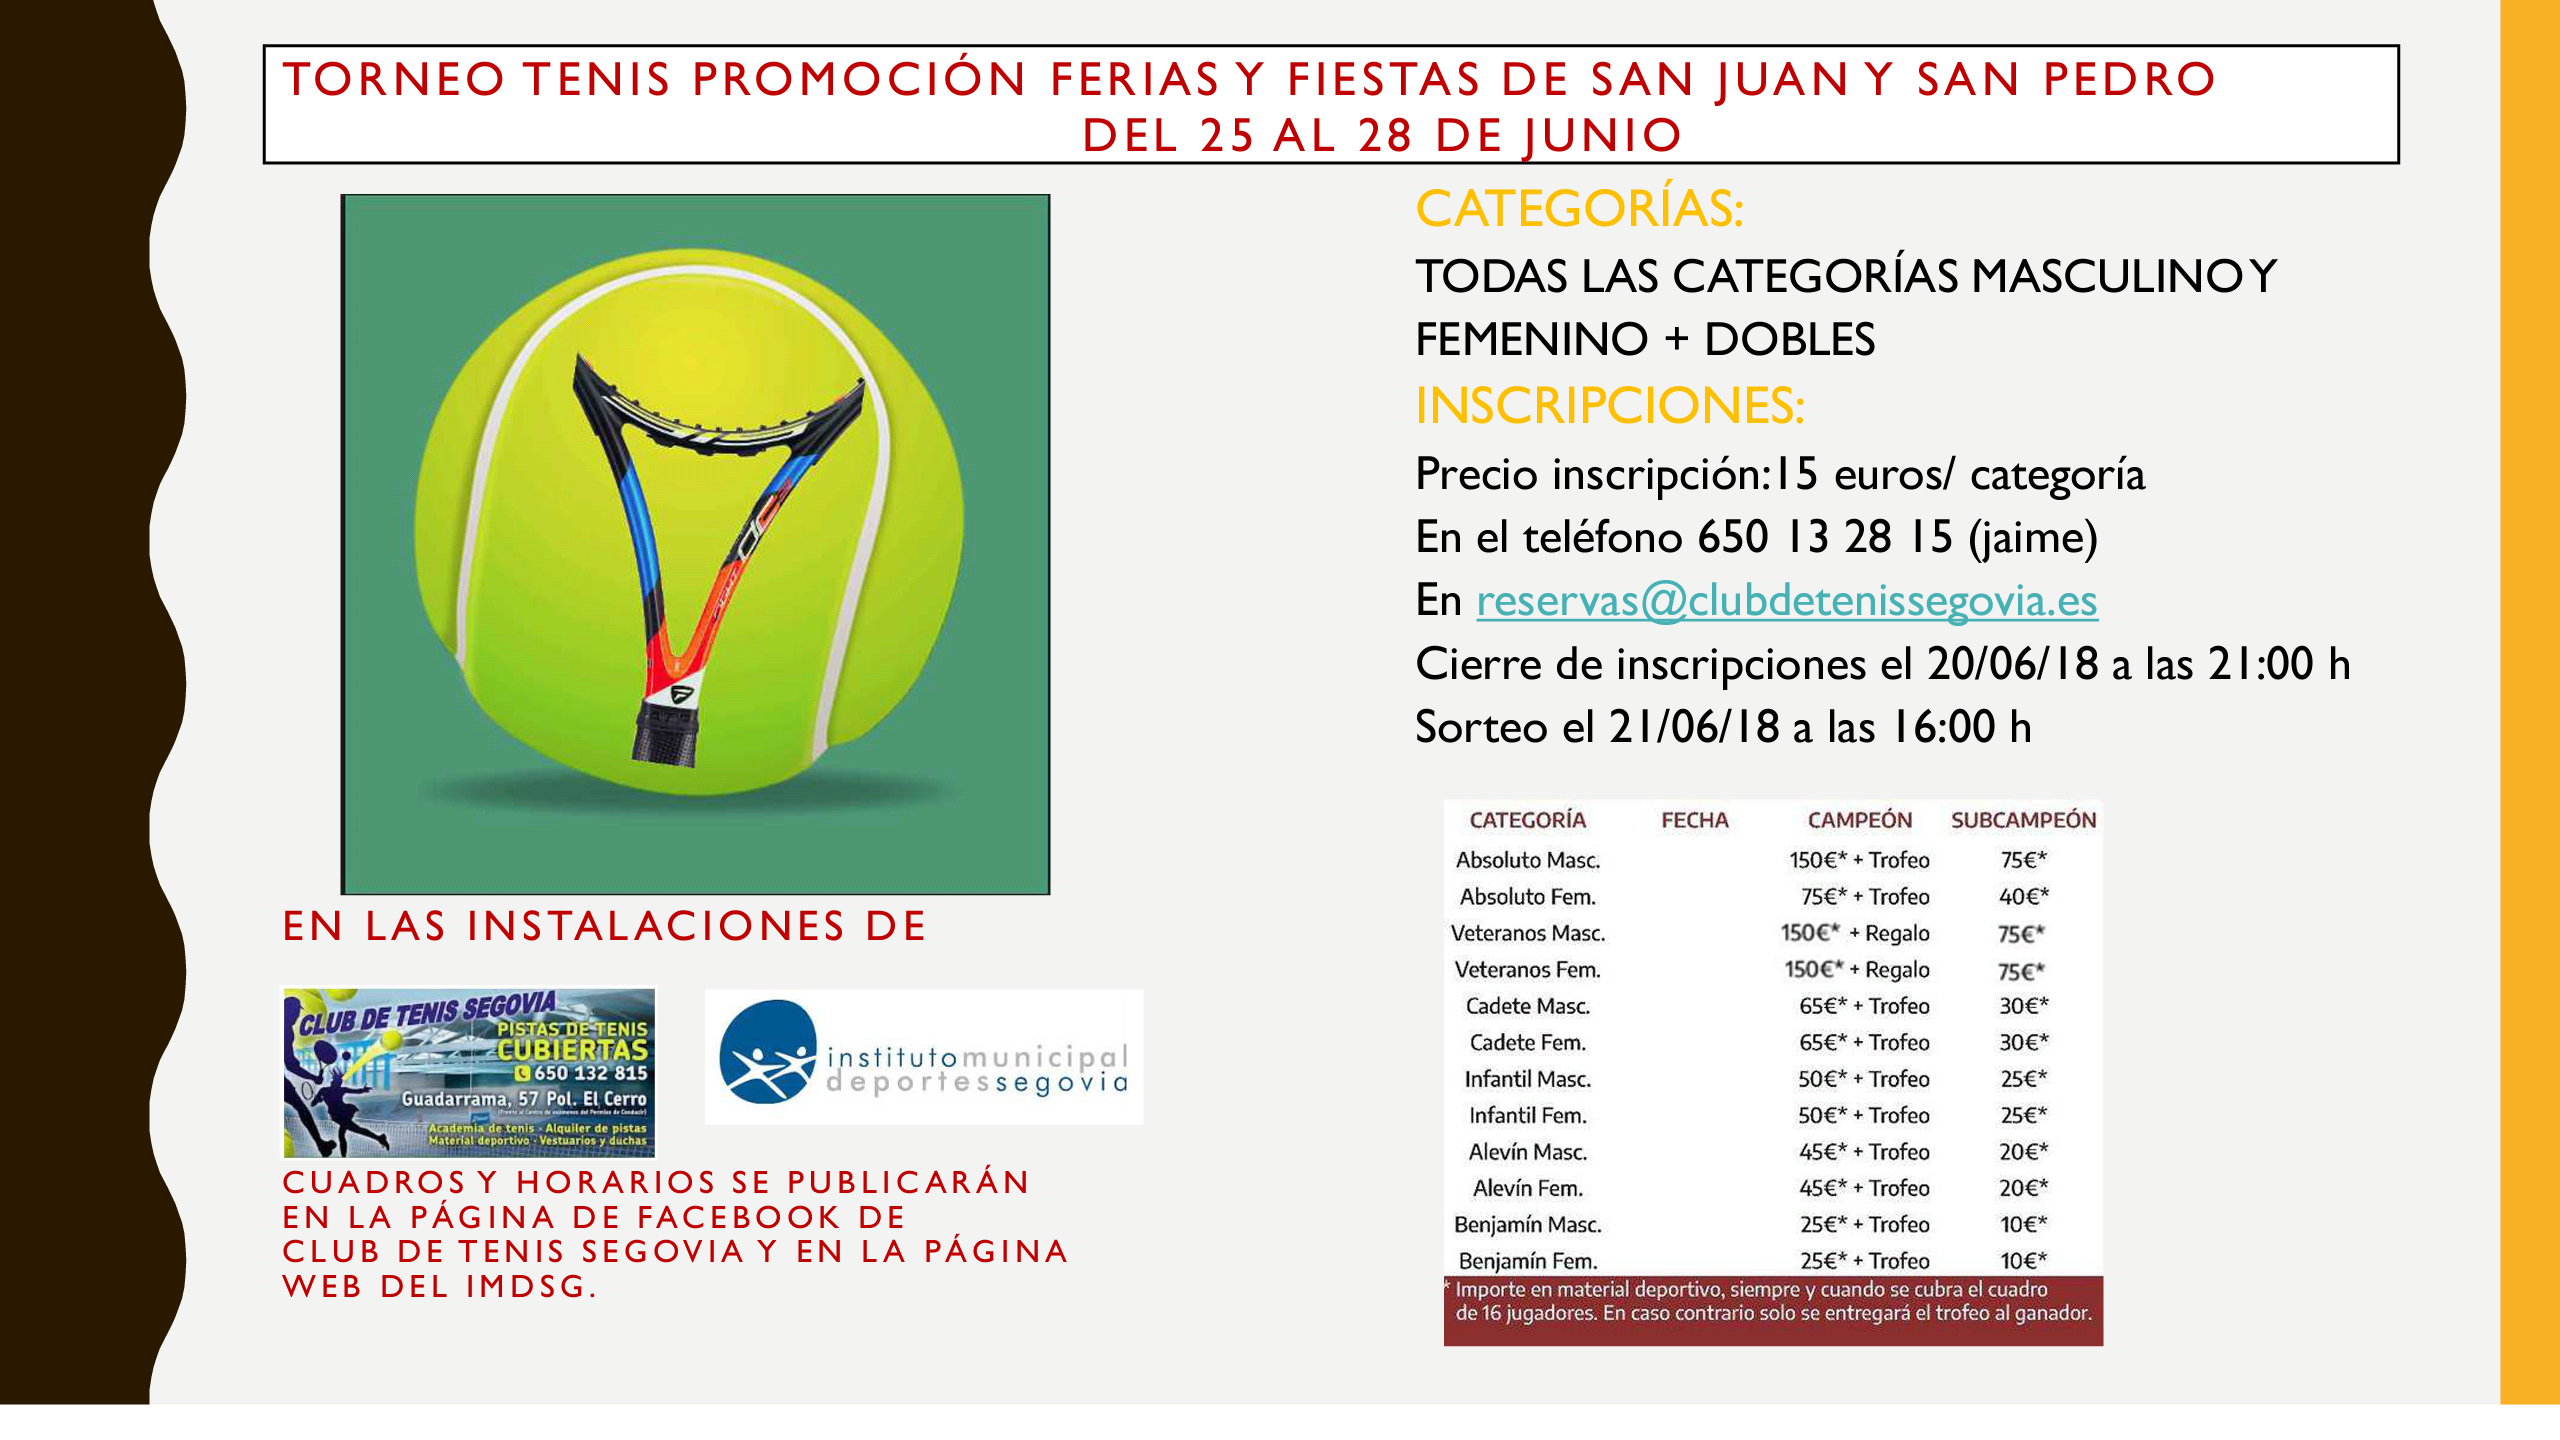 Torneo de Tenis Ferias y Fiestas San Juan y San Pedro 2018